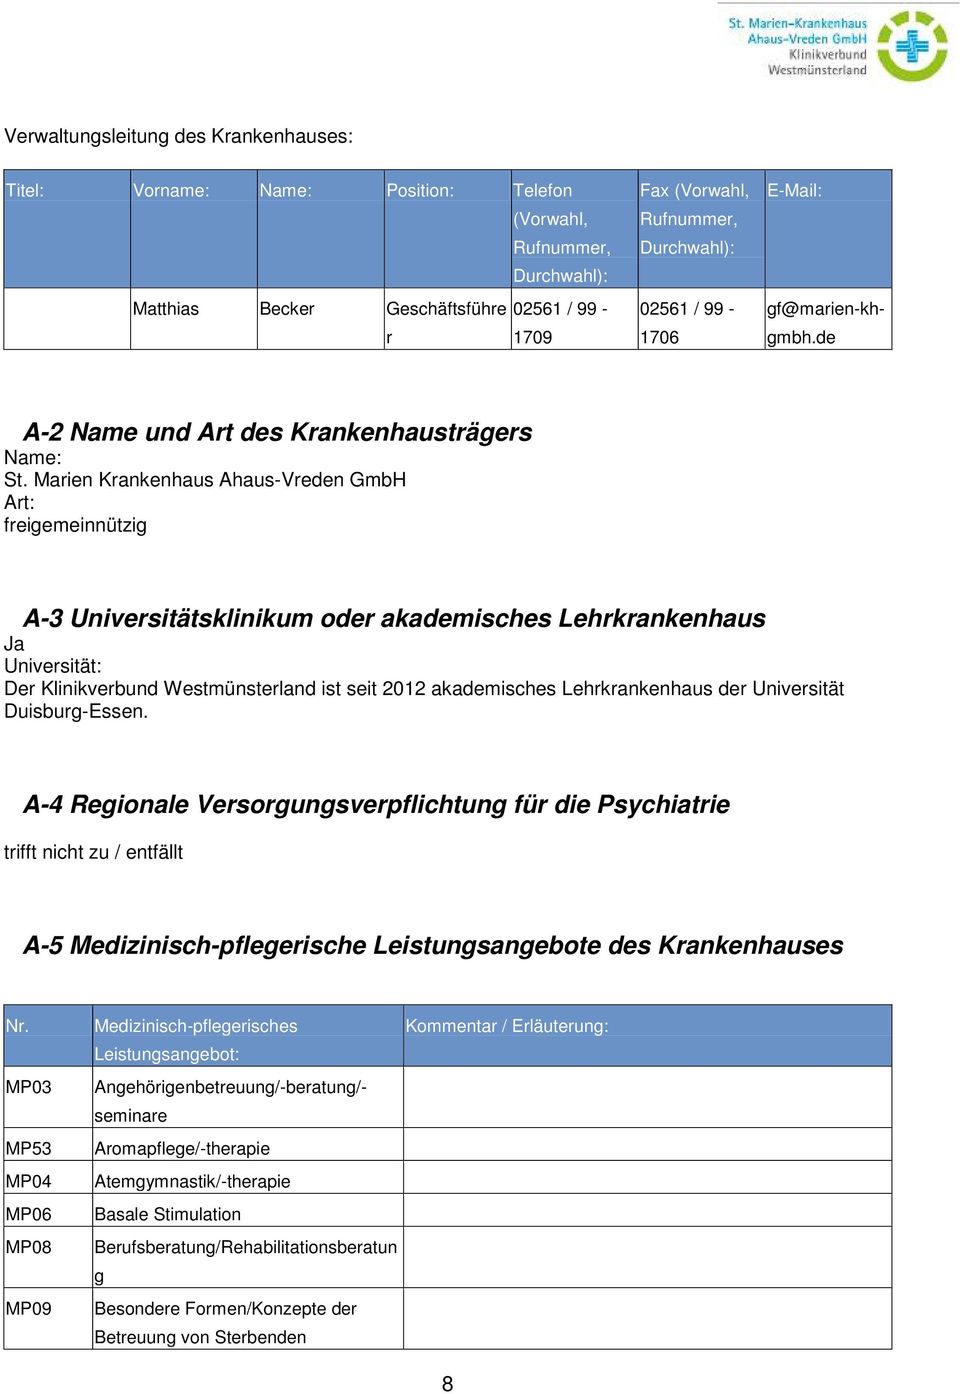 Marien -Vreden GmbH Art: freigemeinnützig A-3 Universitätsklinikum oder akademisches Lehrkrankenhaus Ja Universität: Der Klinikverbund Westmünsterland ist seit 2012 akademisches Lehrkrankenhaus der